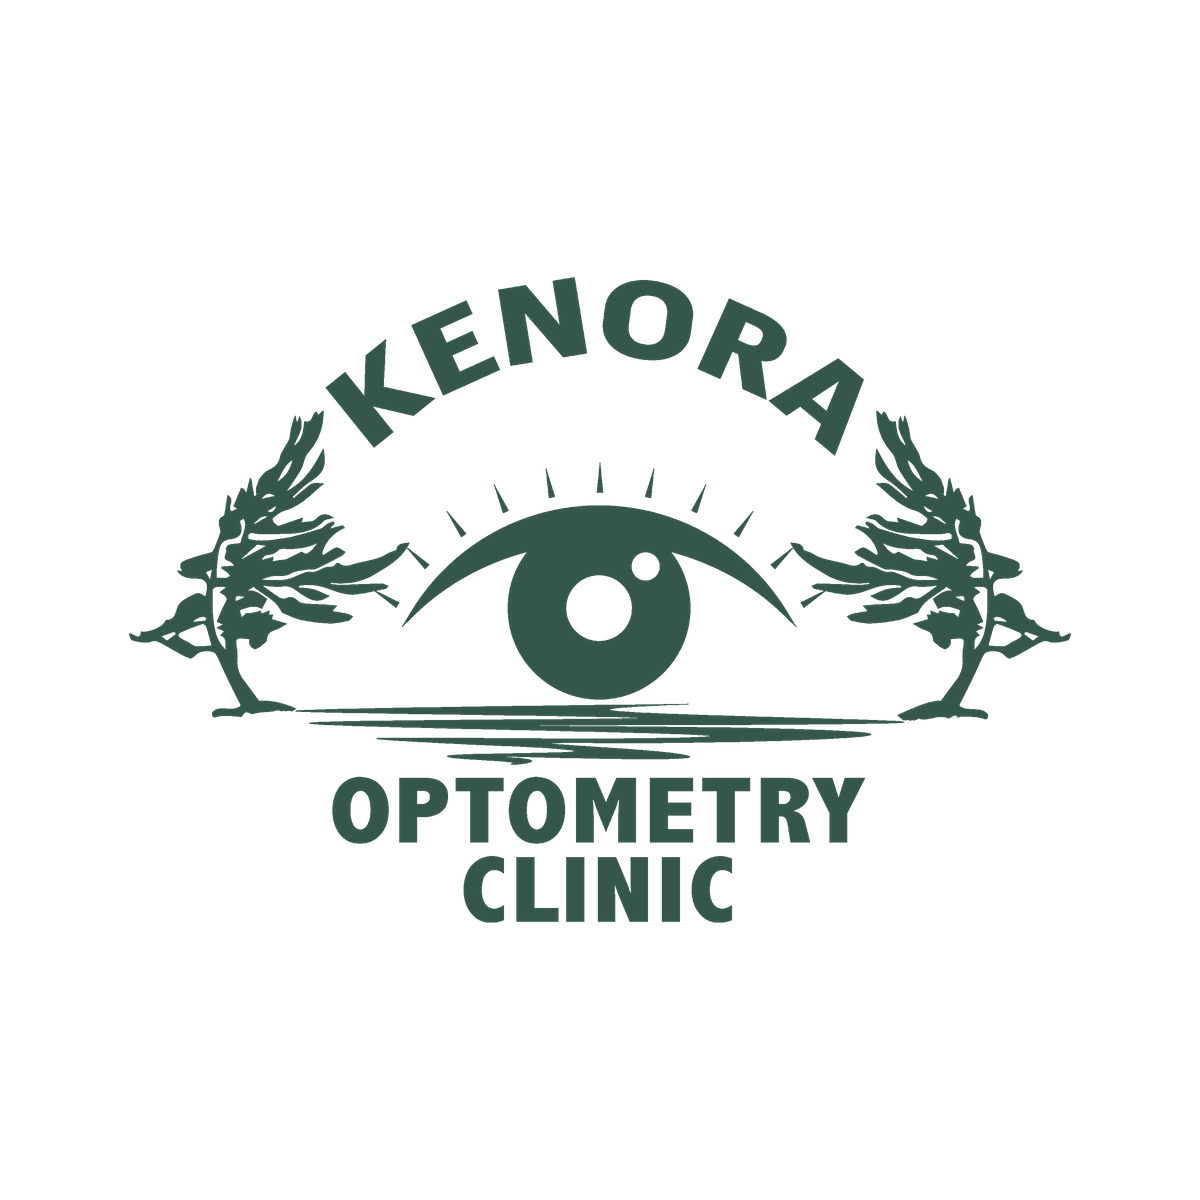 Kenora Optometry Clinic